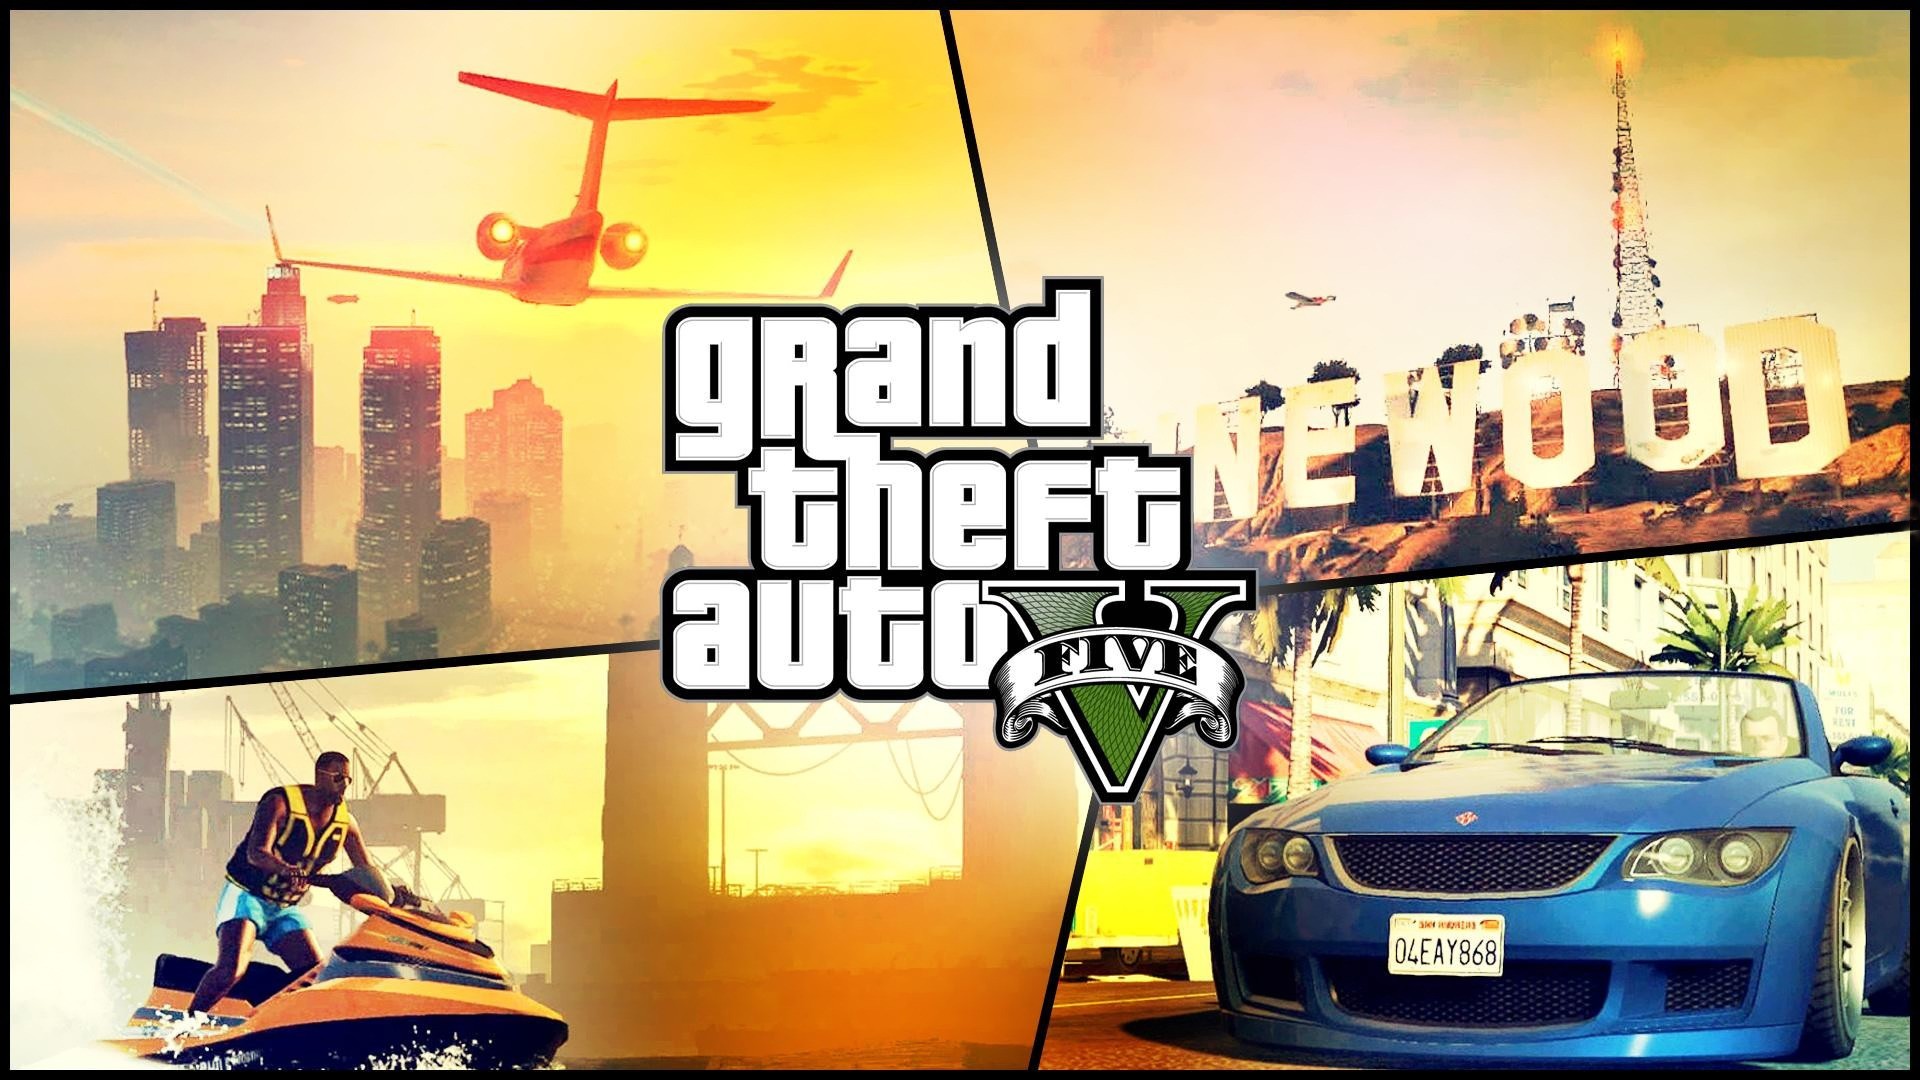 Grand Theft Auto V, Rockstar Games, Video Games Wallpaper